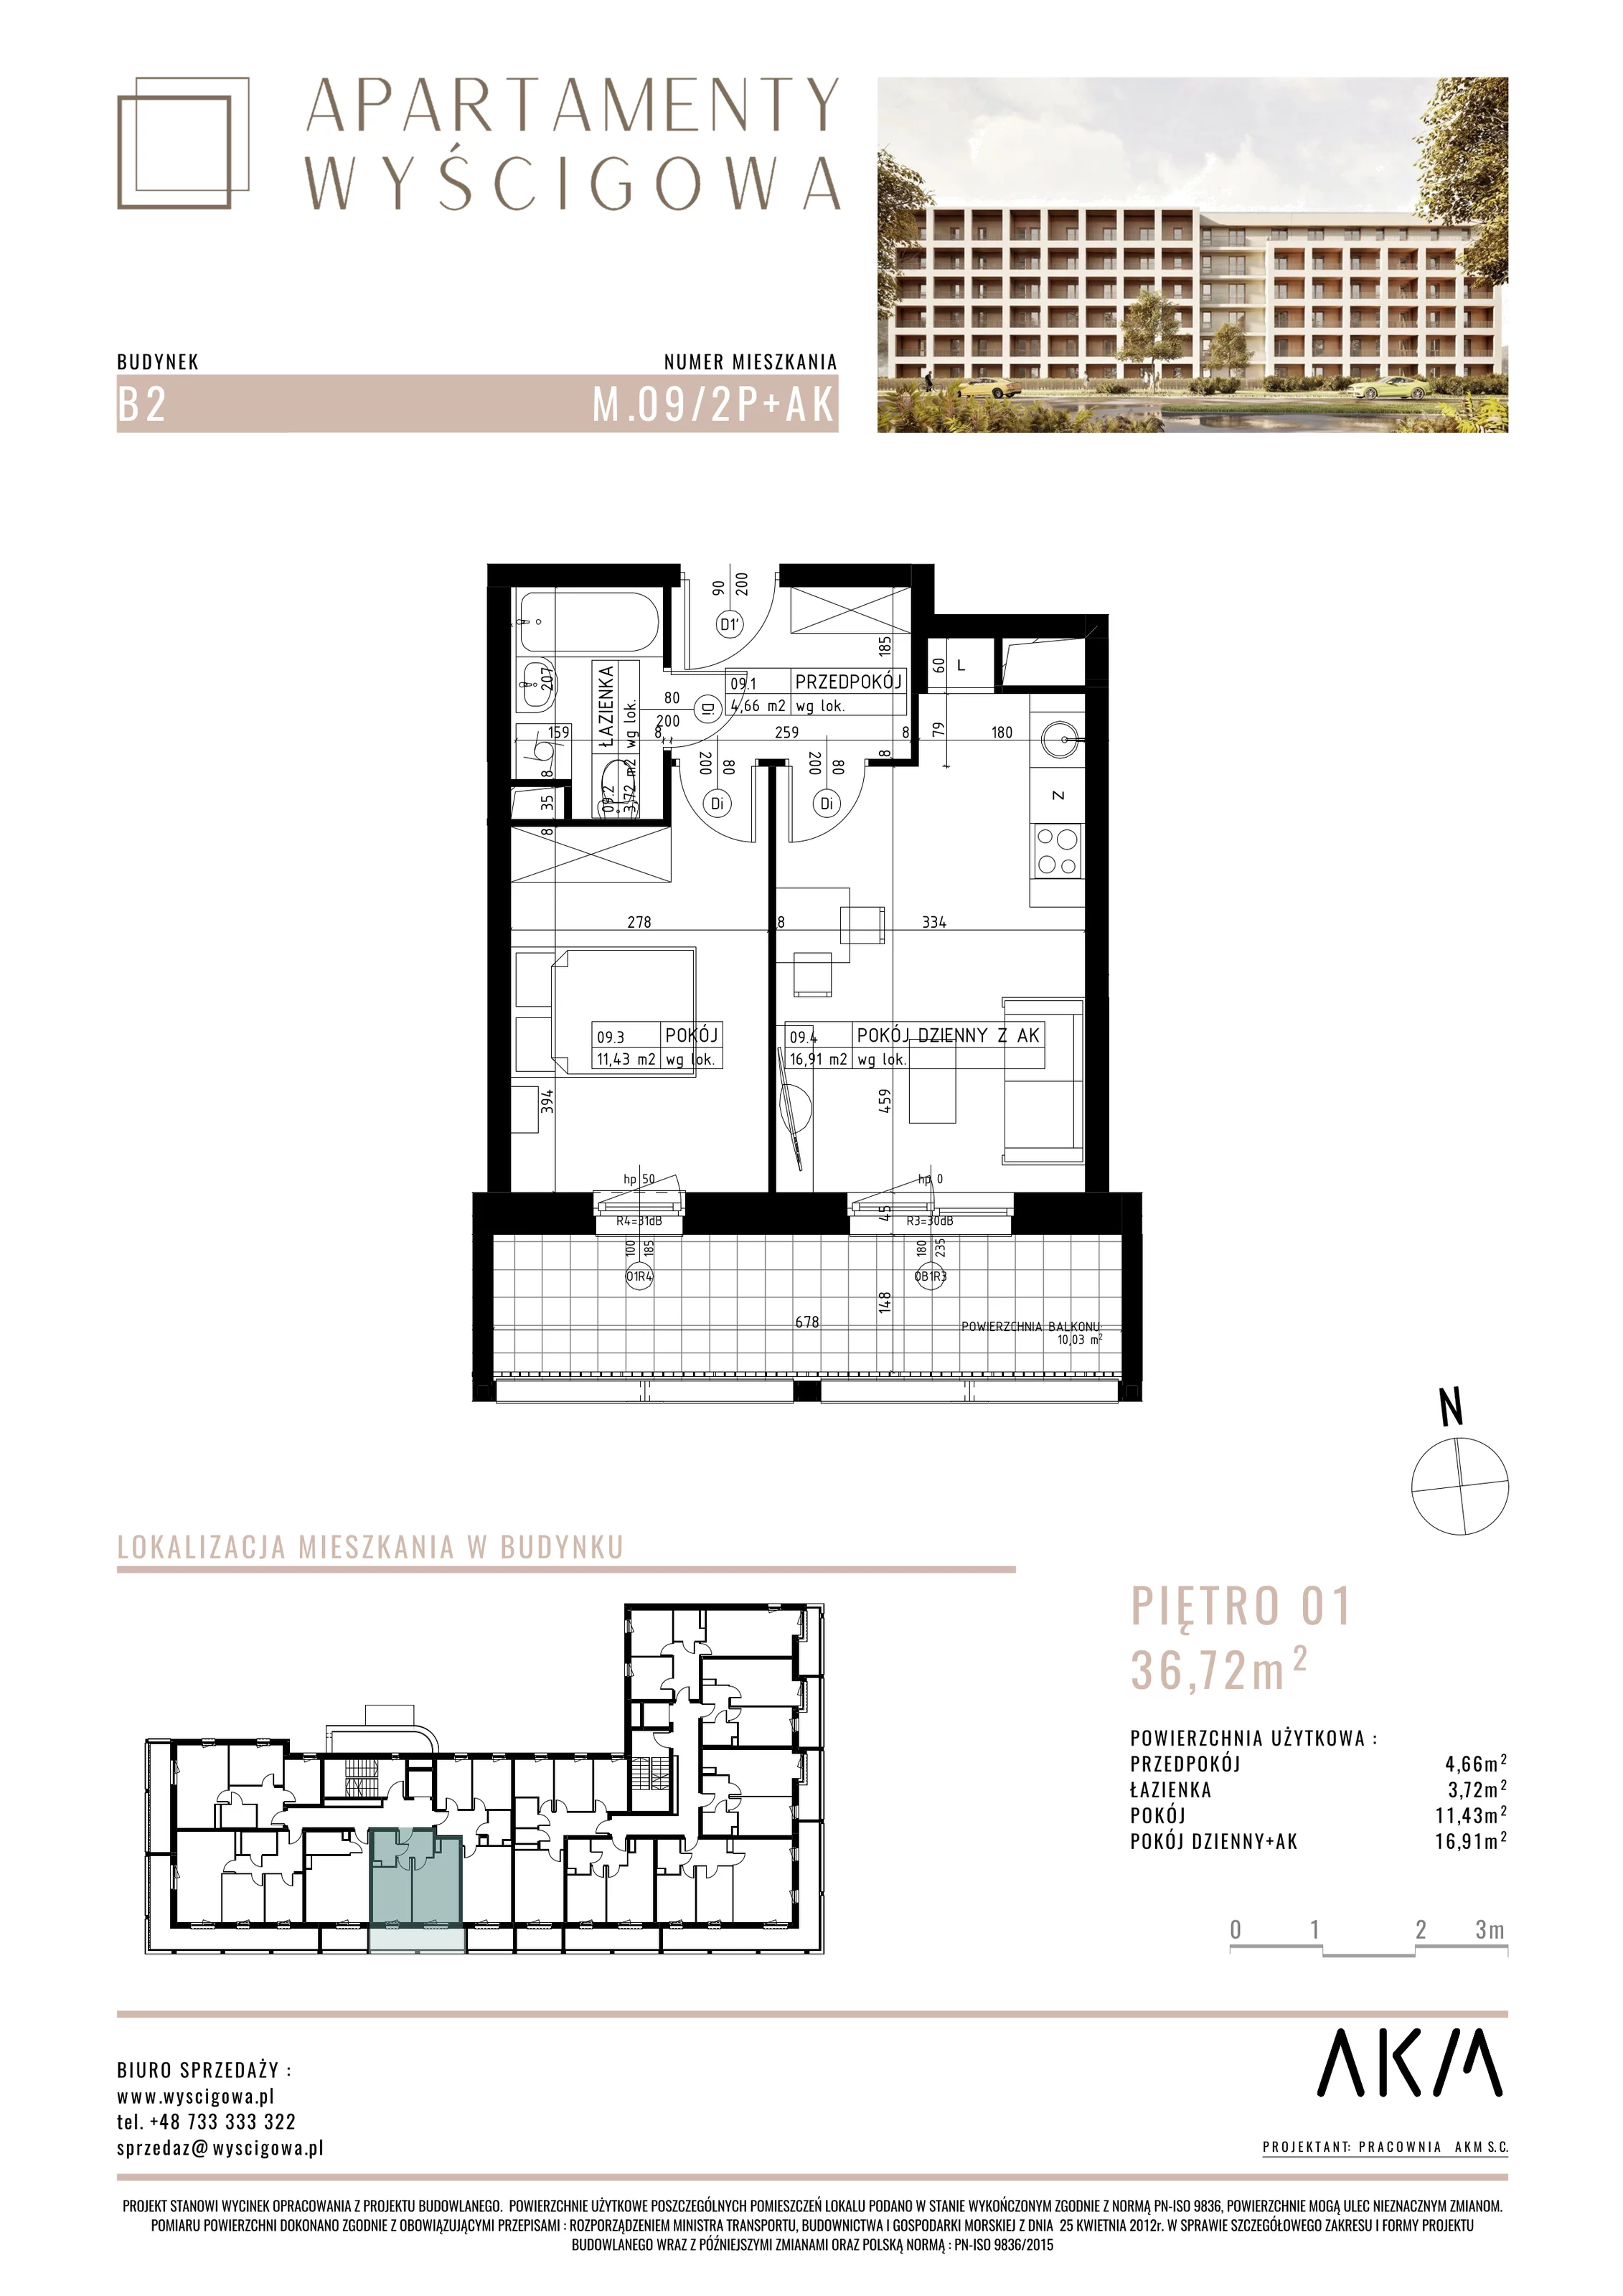 Mieszkanie 36,72 m², piętro 1, oferta nr B2.M9, Apartamenty Wyścigowa, Lublin, Dziesiąta, Dziesiąta, ul. Wyścigowa